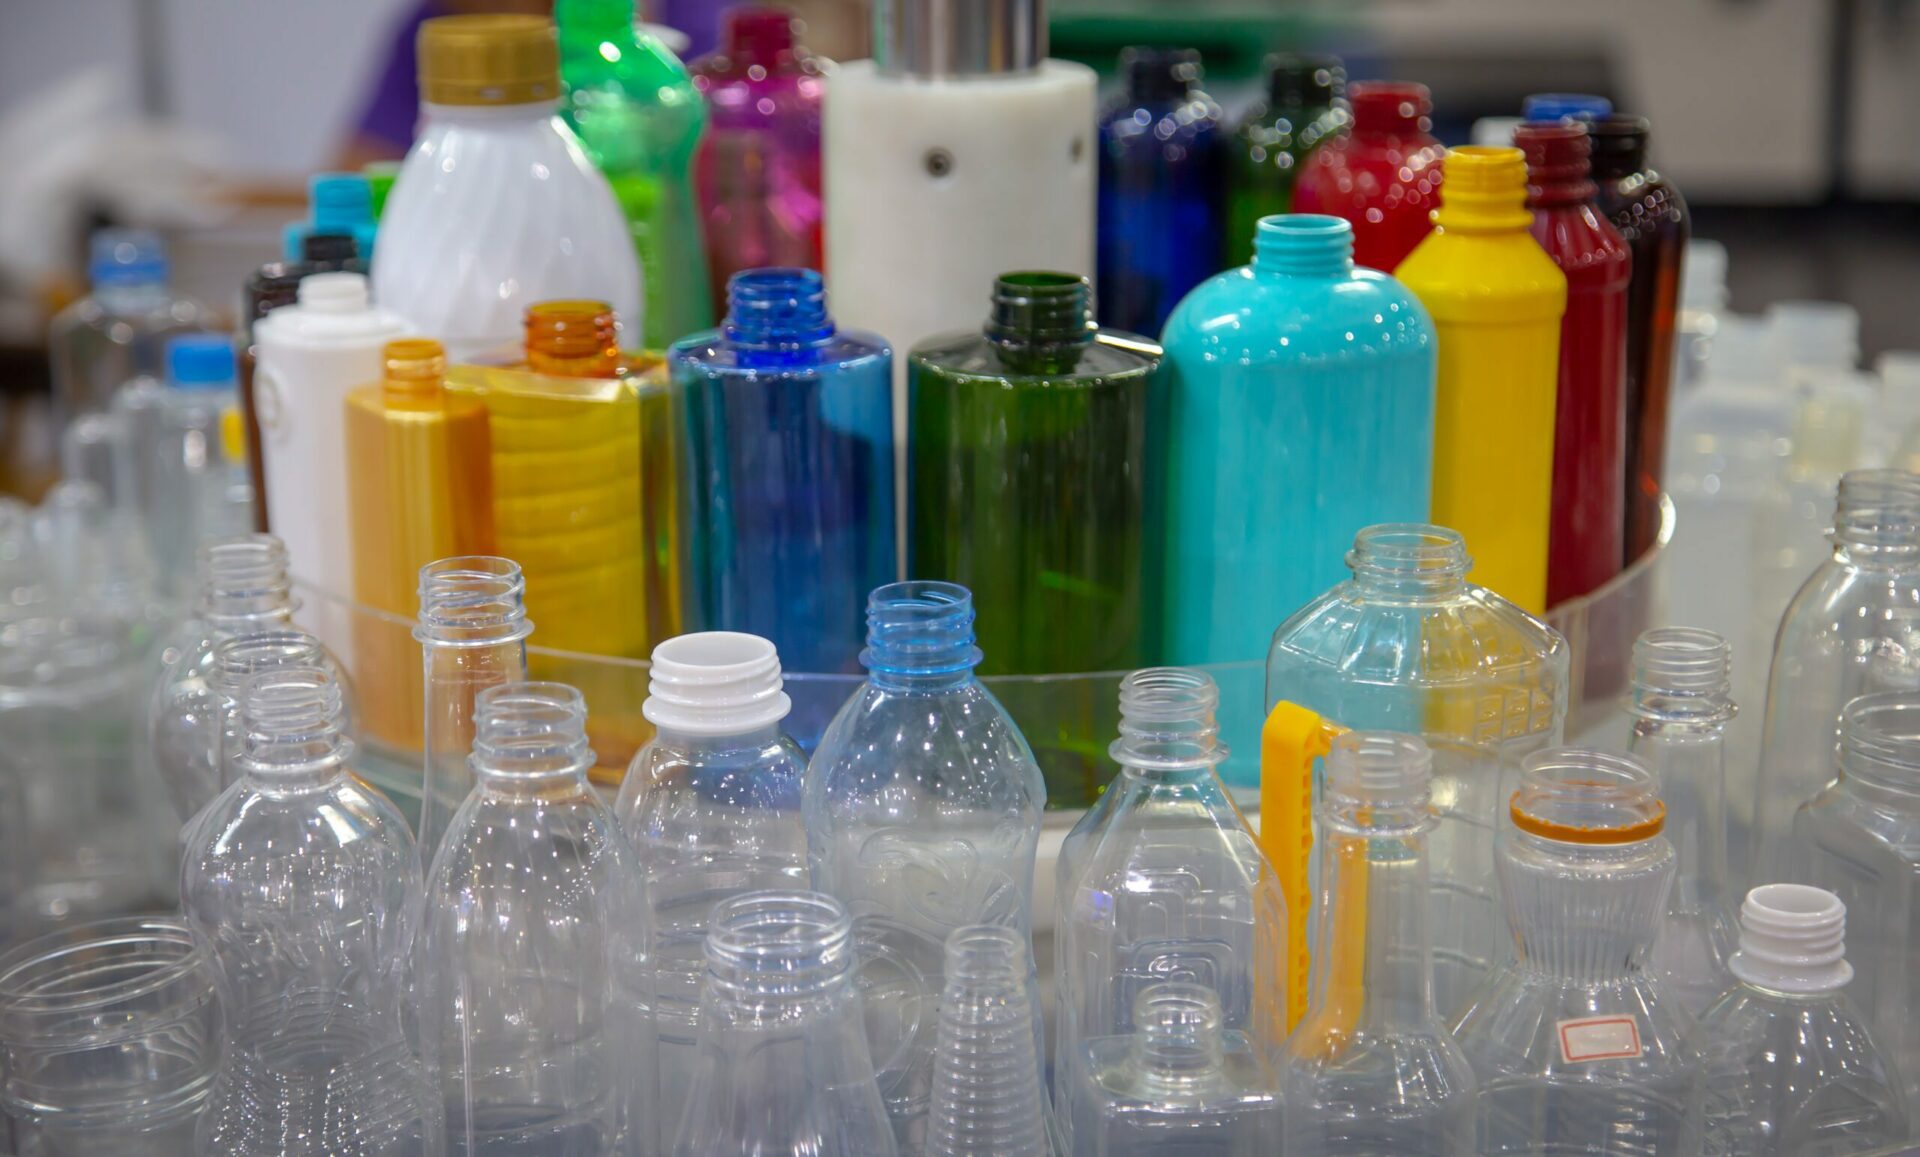 Produk plastik, termasuk mikroplastik, menjadi perhatian karena kehadirannya yang kini tak tergoyahkan secara global, melepaskan EDC ke lingkungan.